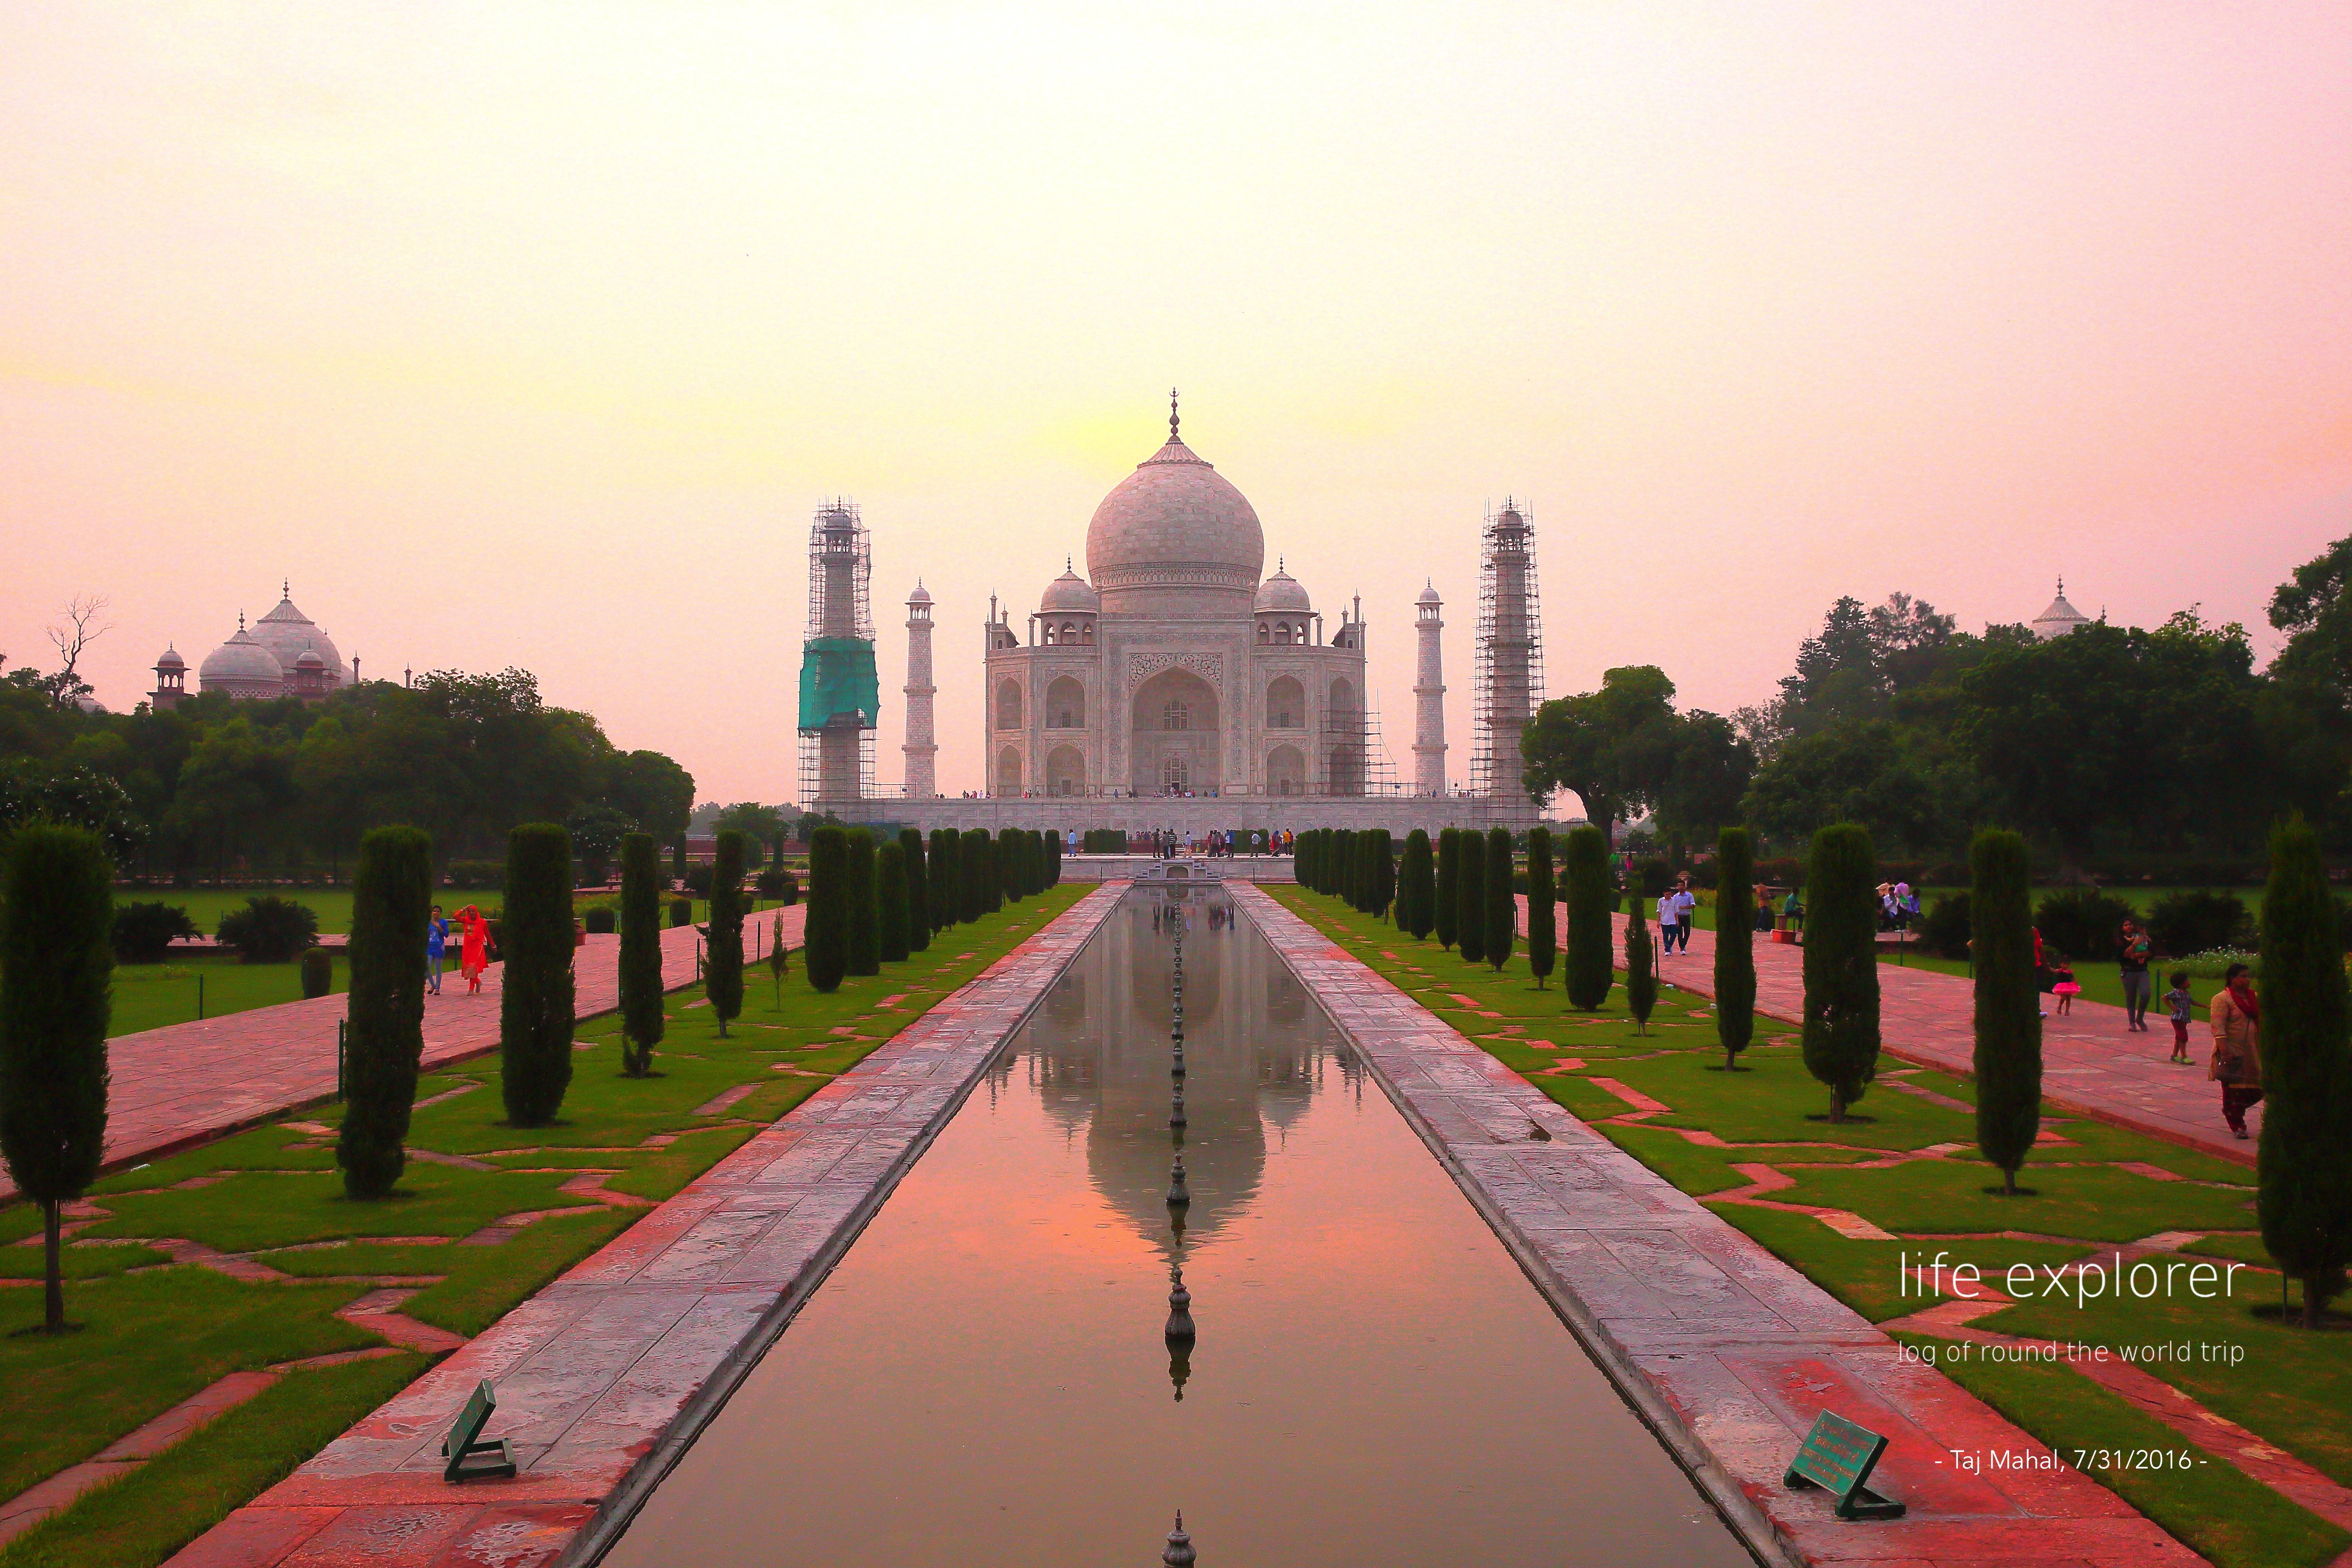 #66 世界で最も美しいお墓 「タージマハル」- The World’s Most Beautiful mausoleum  “Taj Mahal”